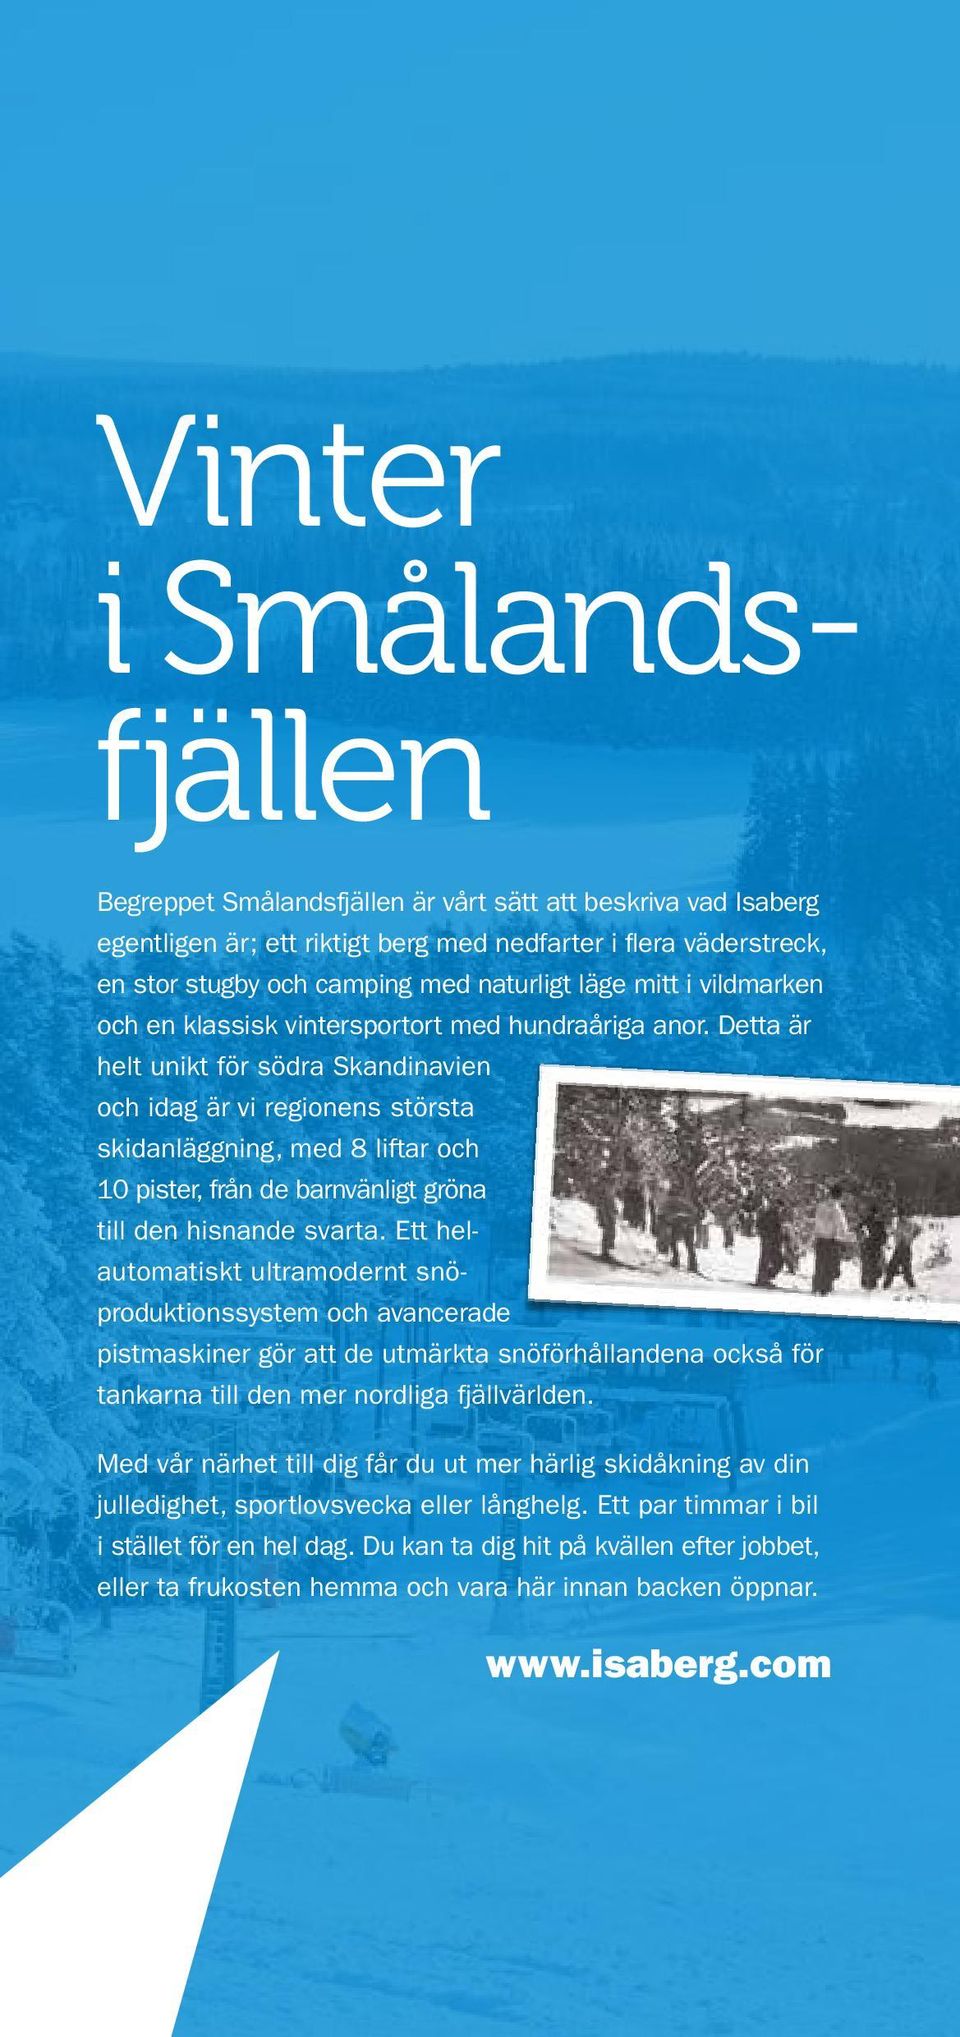 Detta är helt unikt för södra Skandinavien och idag är vi regionens största skidanläggning, med 8 liftar och 10 pister, från de barnvänligt gröna till den hisnande svarta.